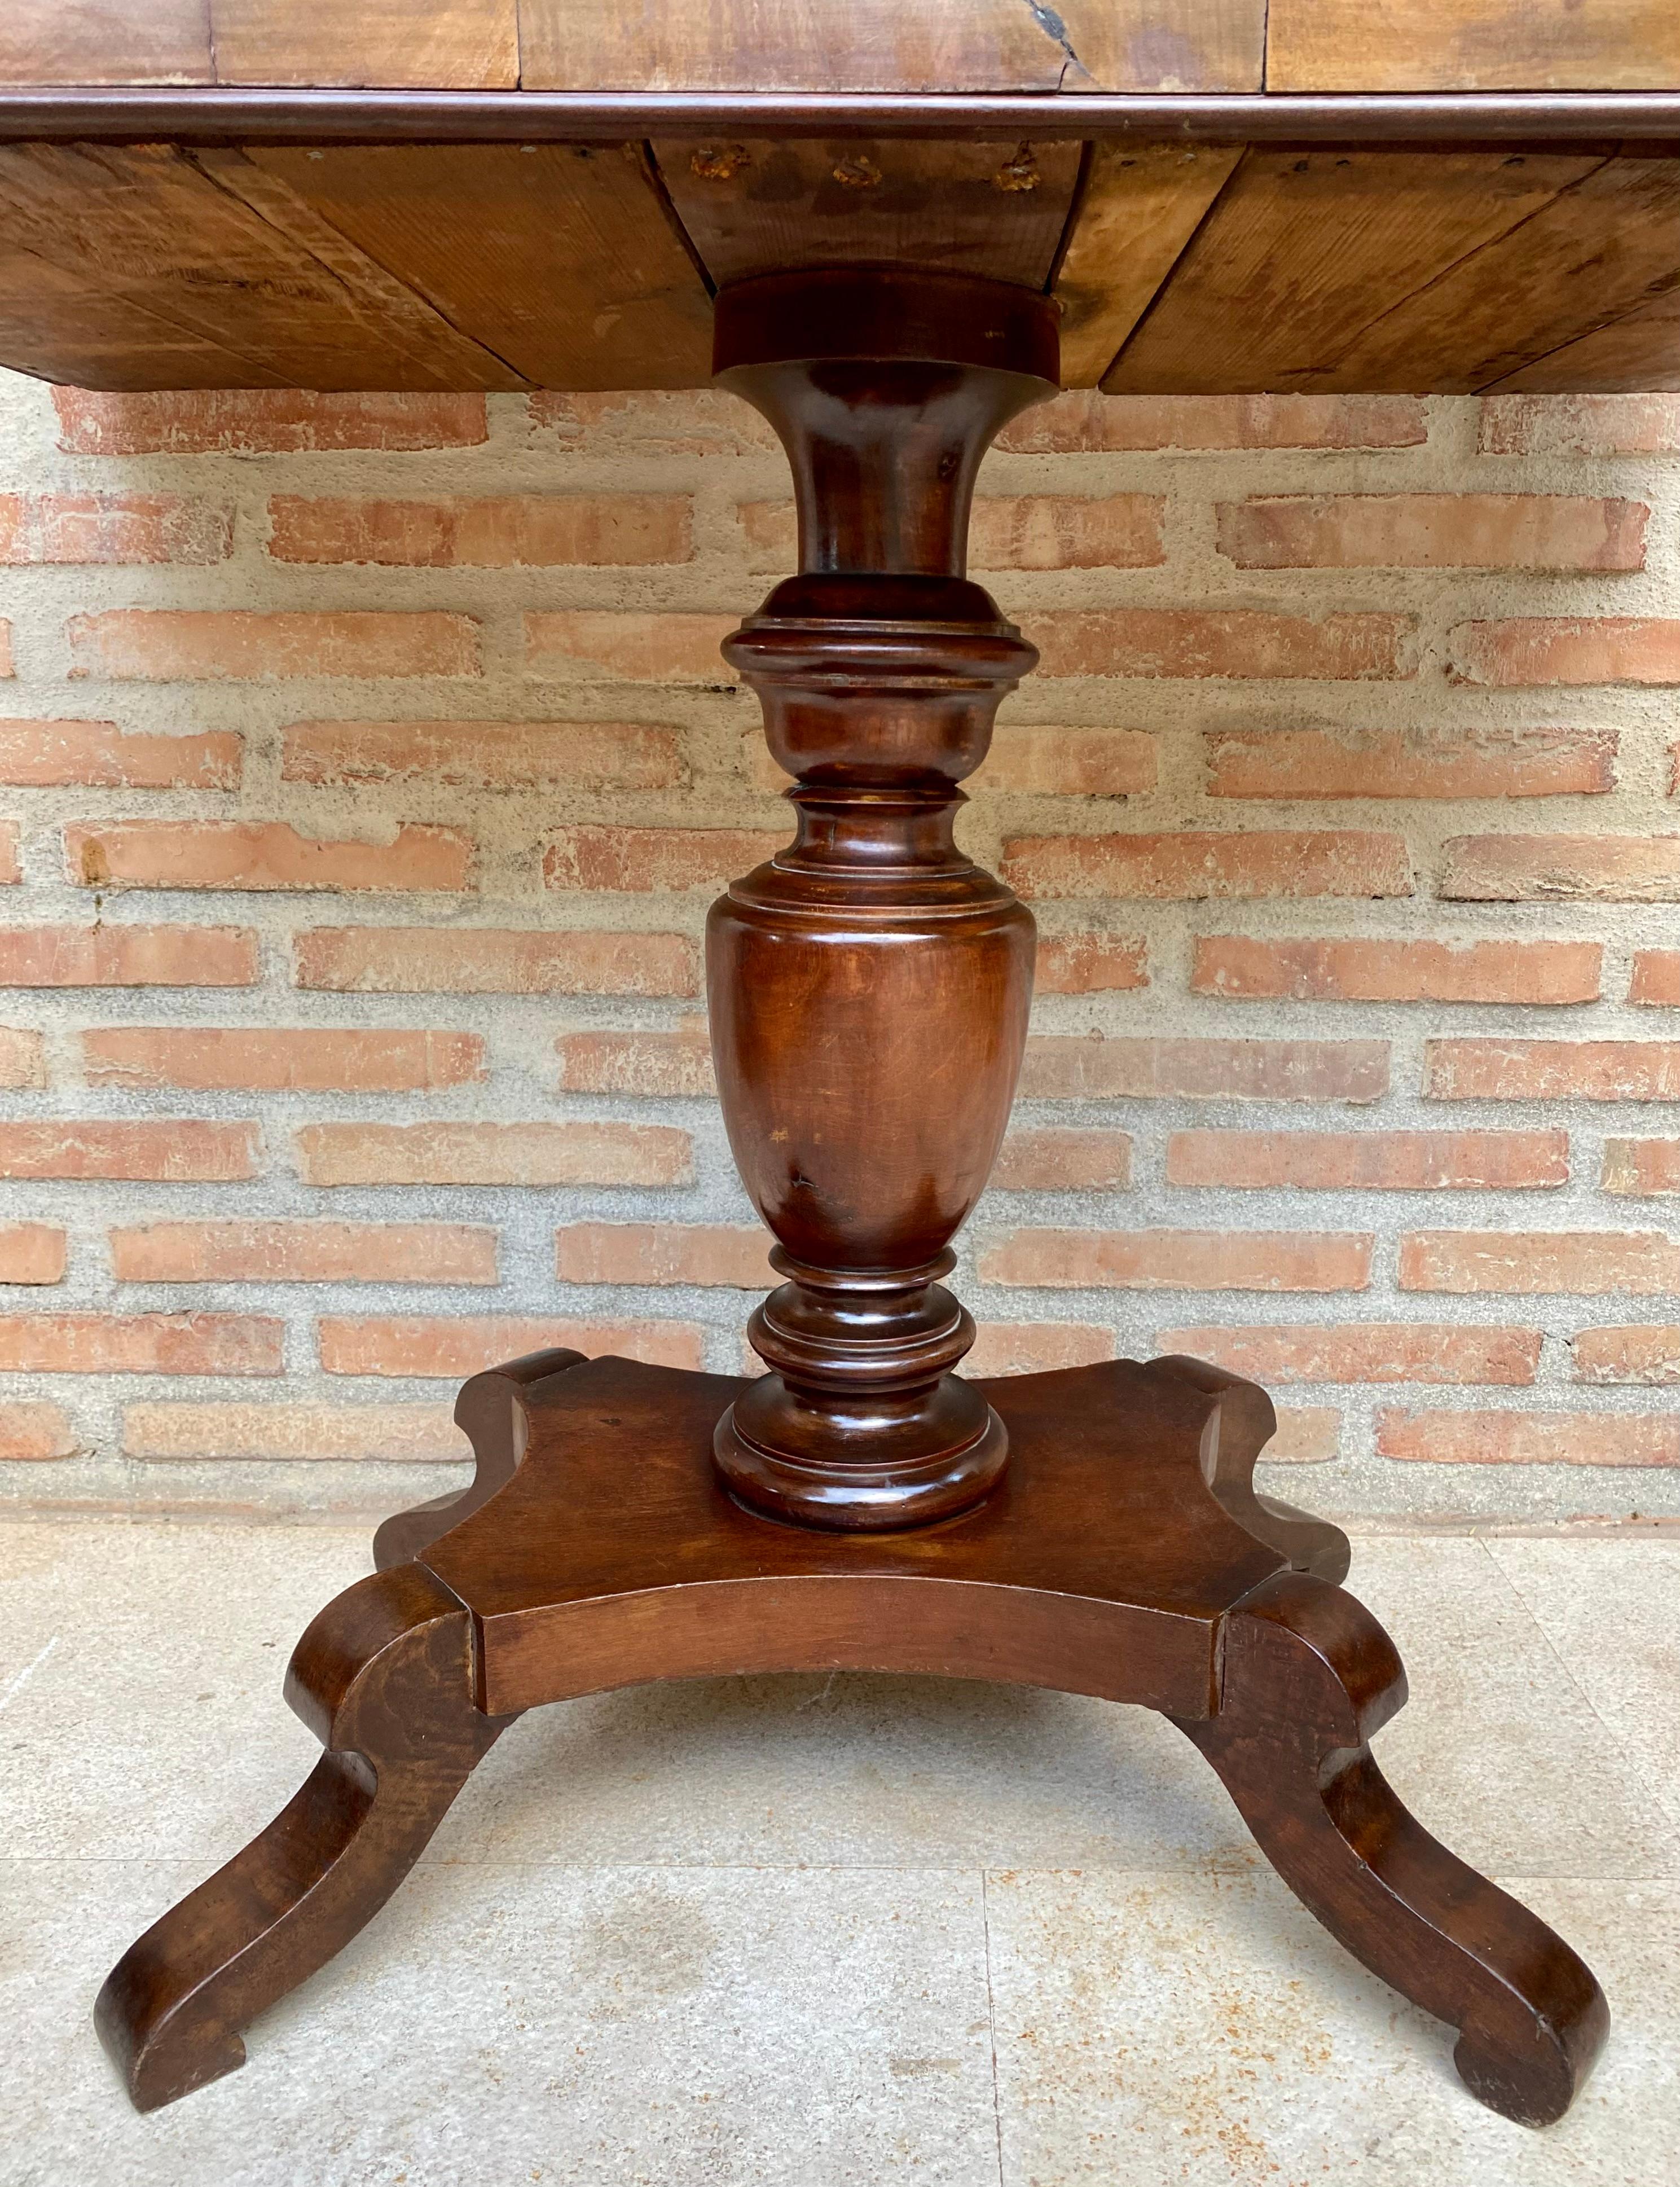 Französischer Nussbaum-Klapptisch, um 1920.
Dieser vielseitige und funktionelle Spieltisch aus Nussbaumholz verfügt über eine klappbare Platte, die sich leicht auf einer Seite anheben und zum Öffnen schwenken oder zum Schließen falten lässt. Der